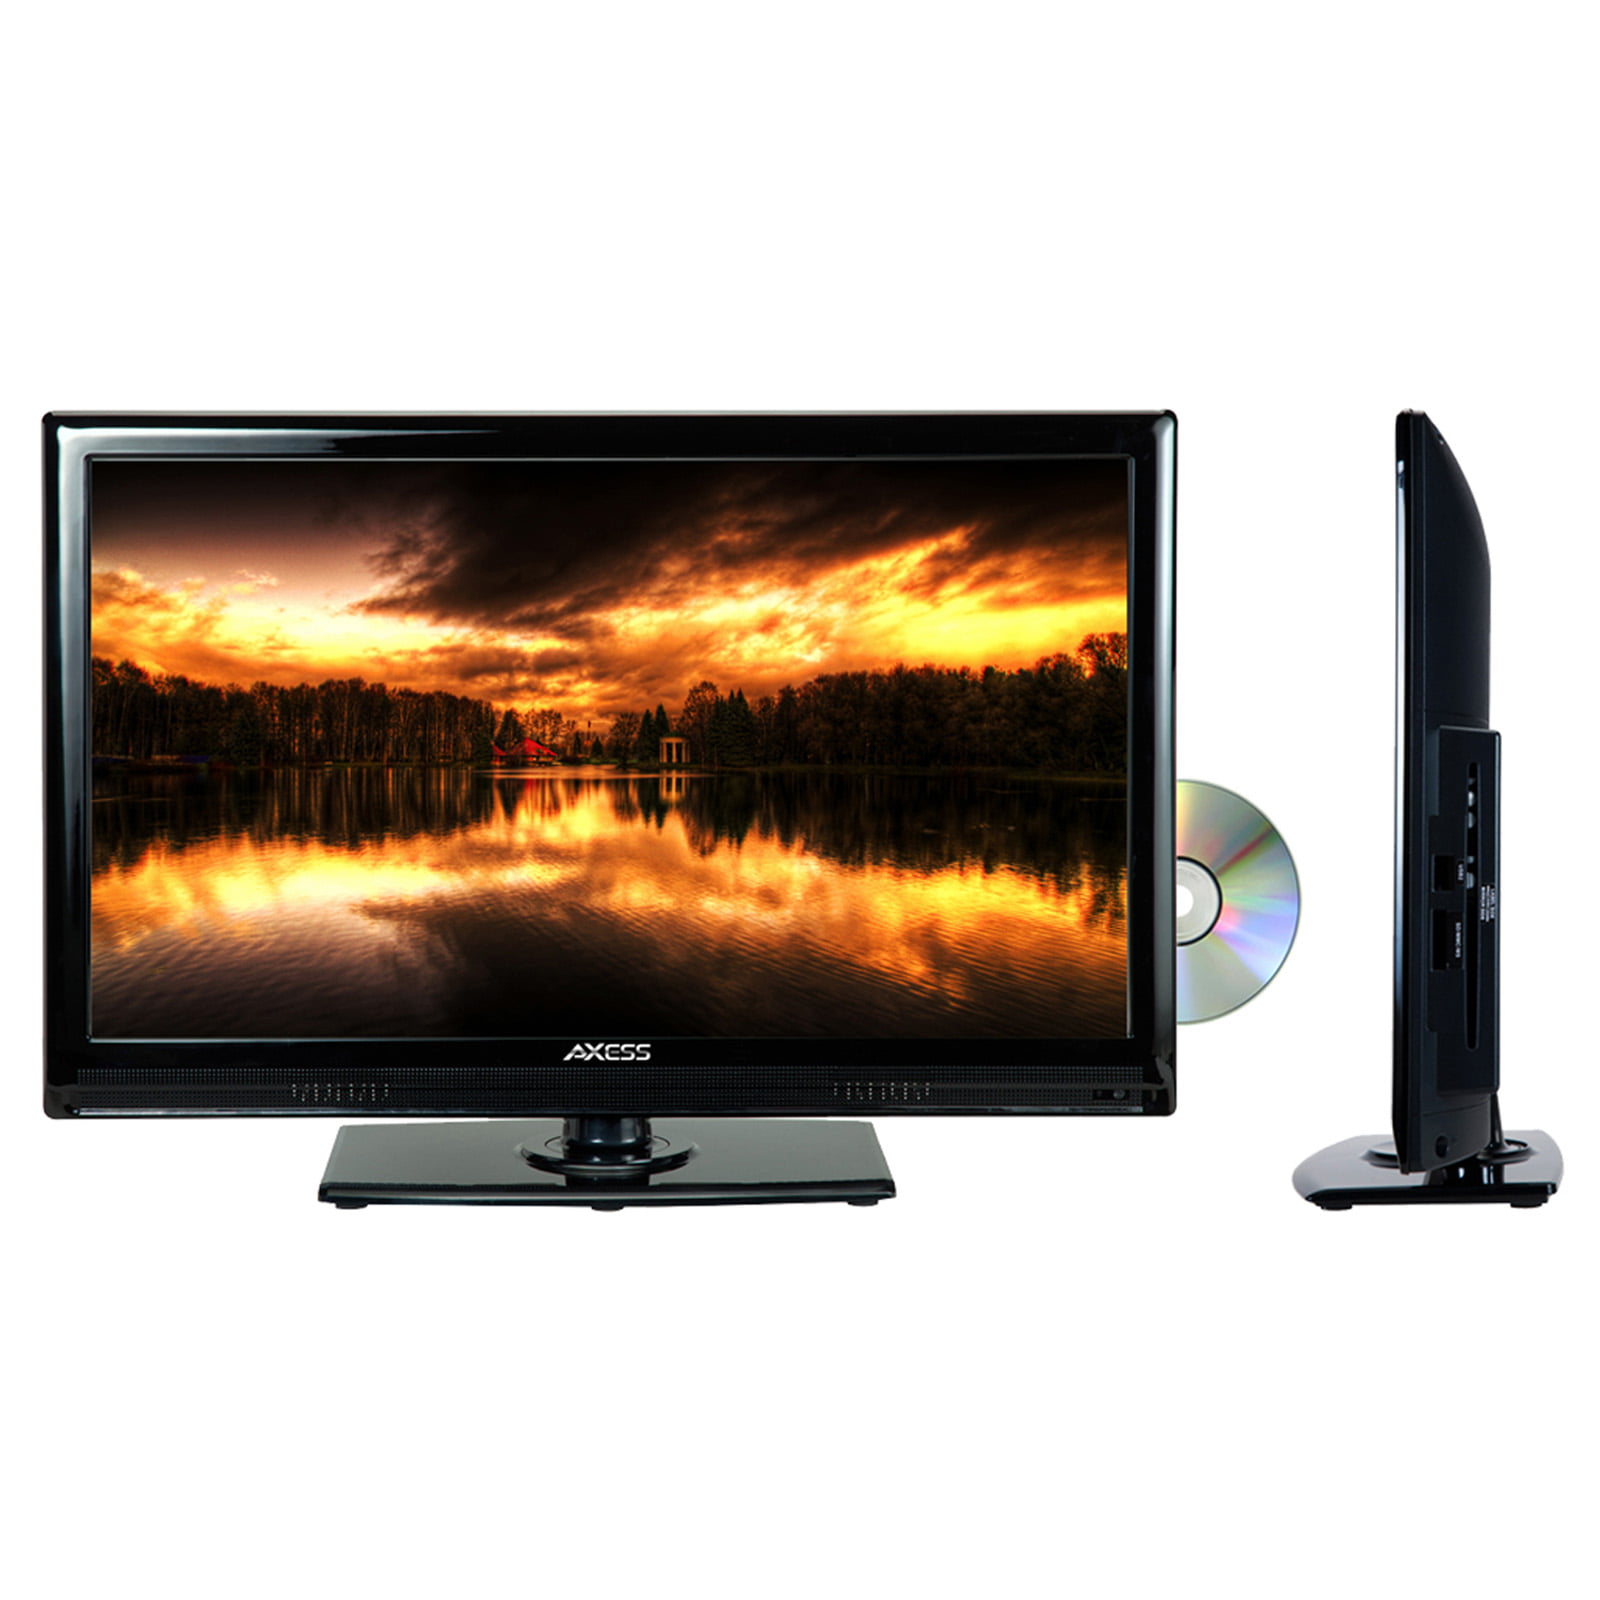 TV LED 19 - Engel LE1962, HD, HDMI, USB, Dolby Digital